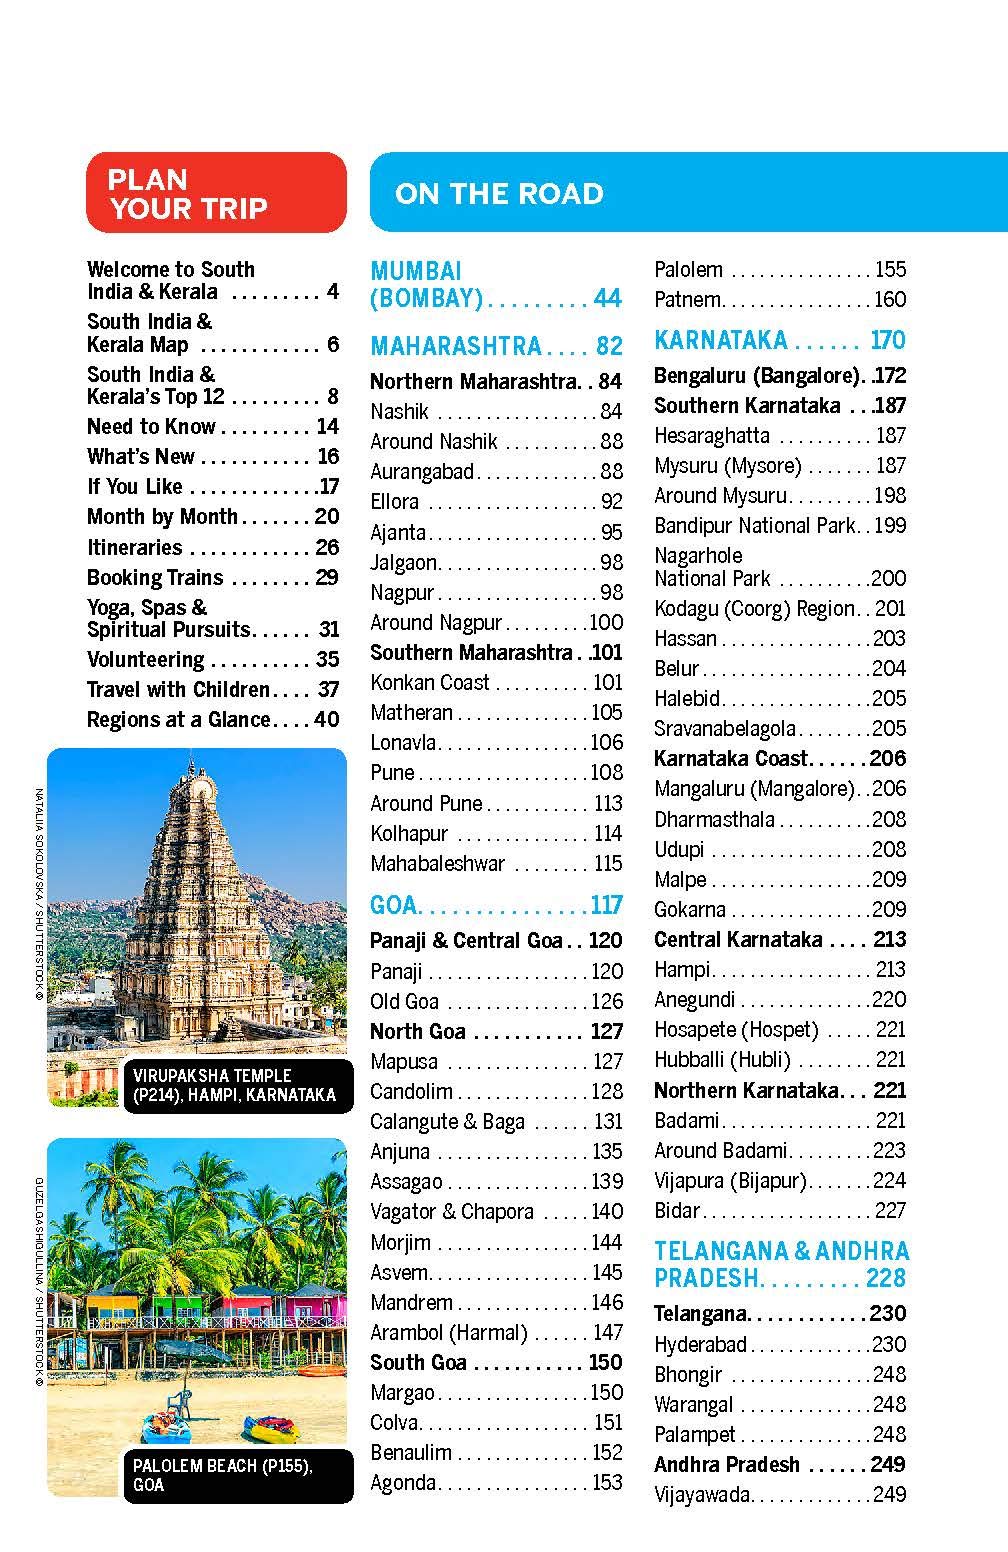 Guide de voyage (en anglais) - India South & Kerala | Lonely Planet guide de voyage Lonely Planet 